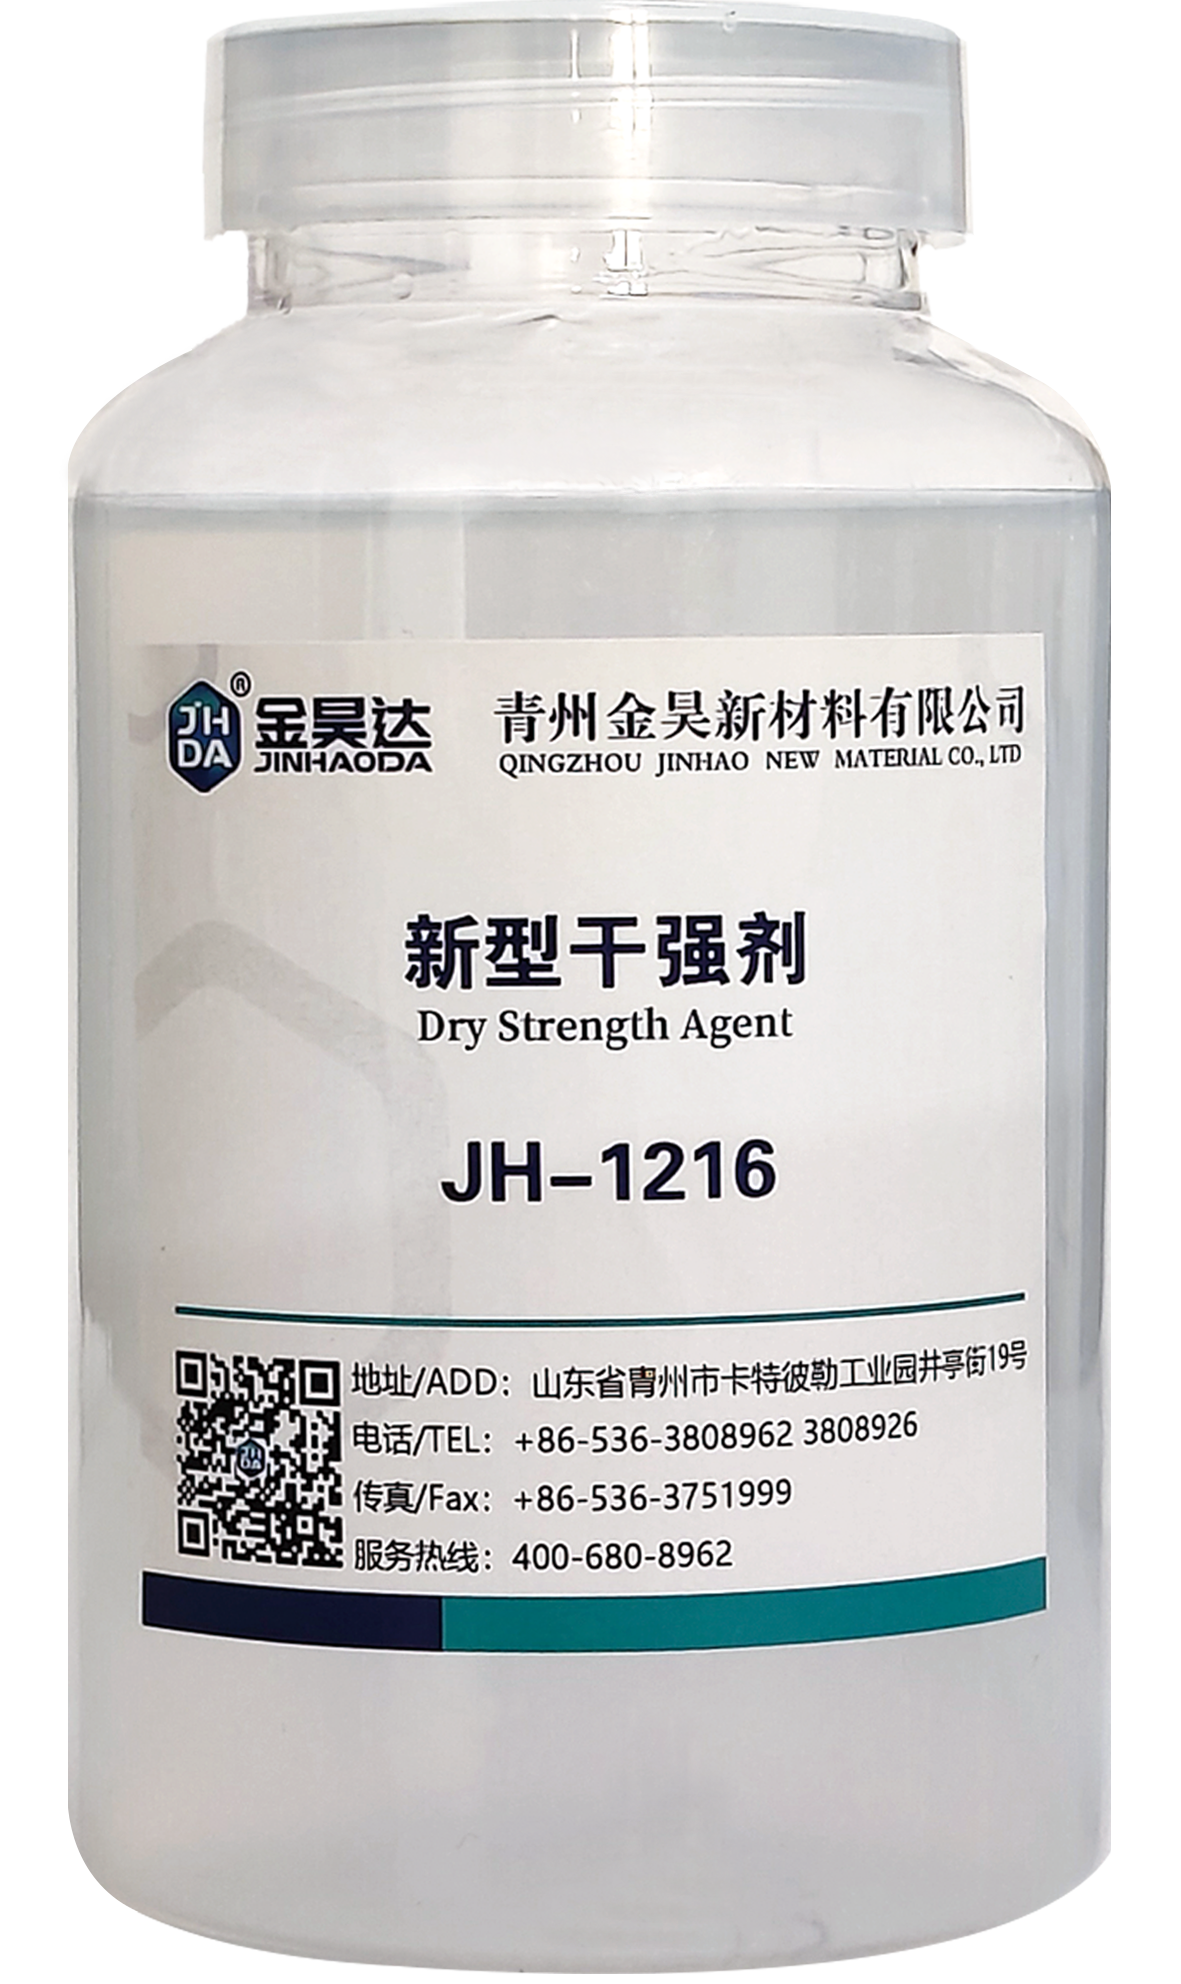 JH-1216新型幹強劑